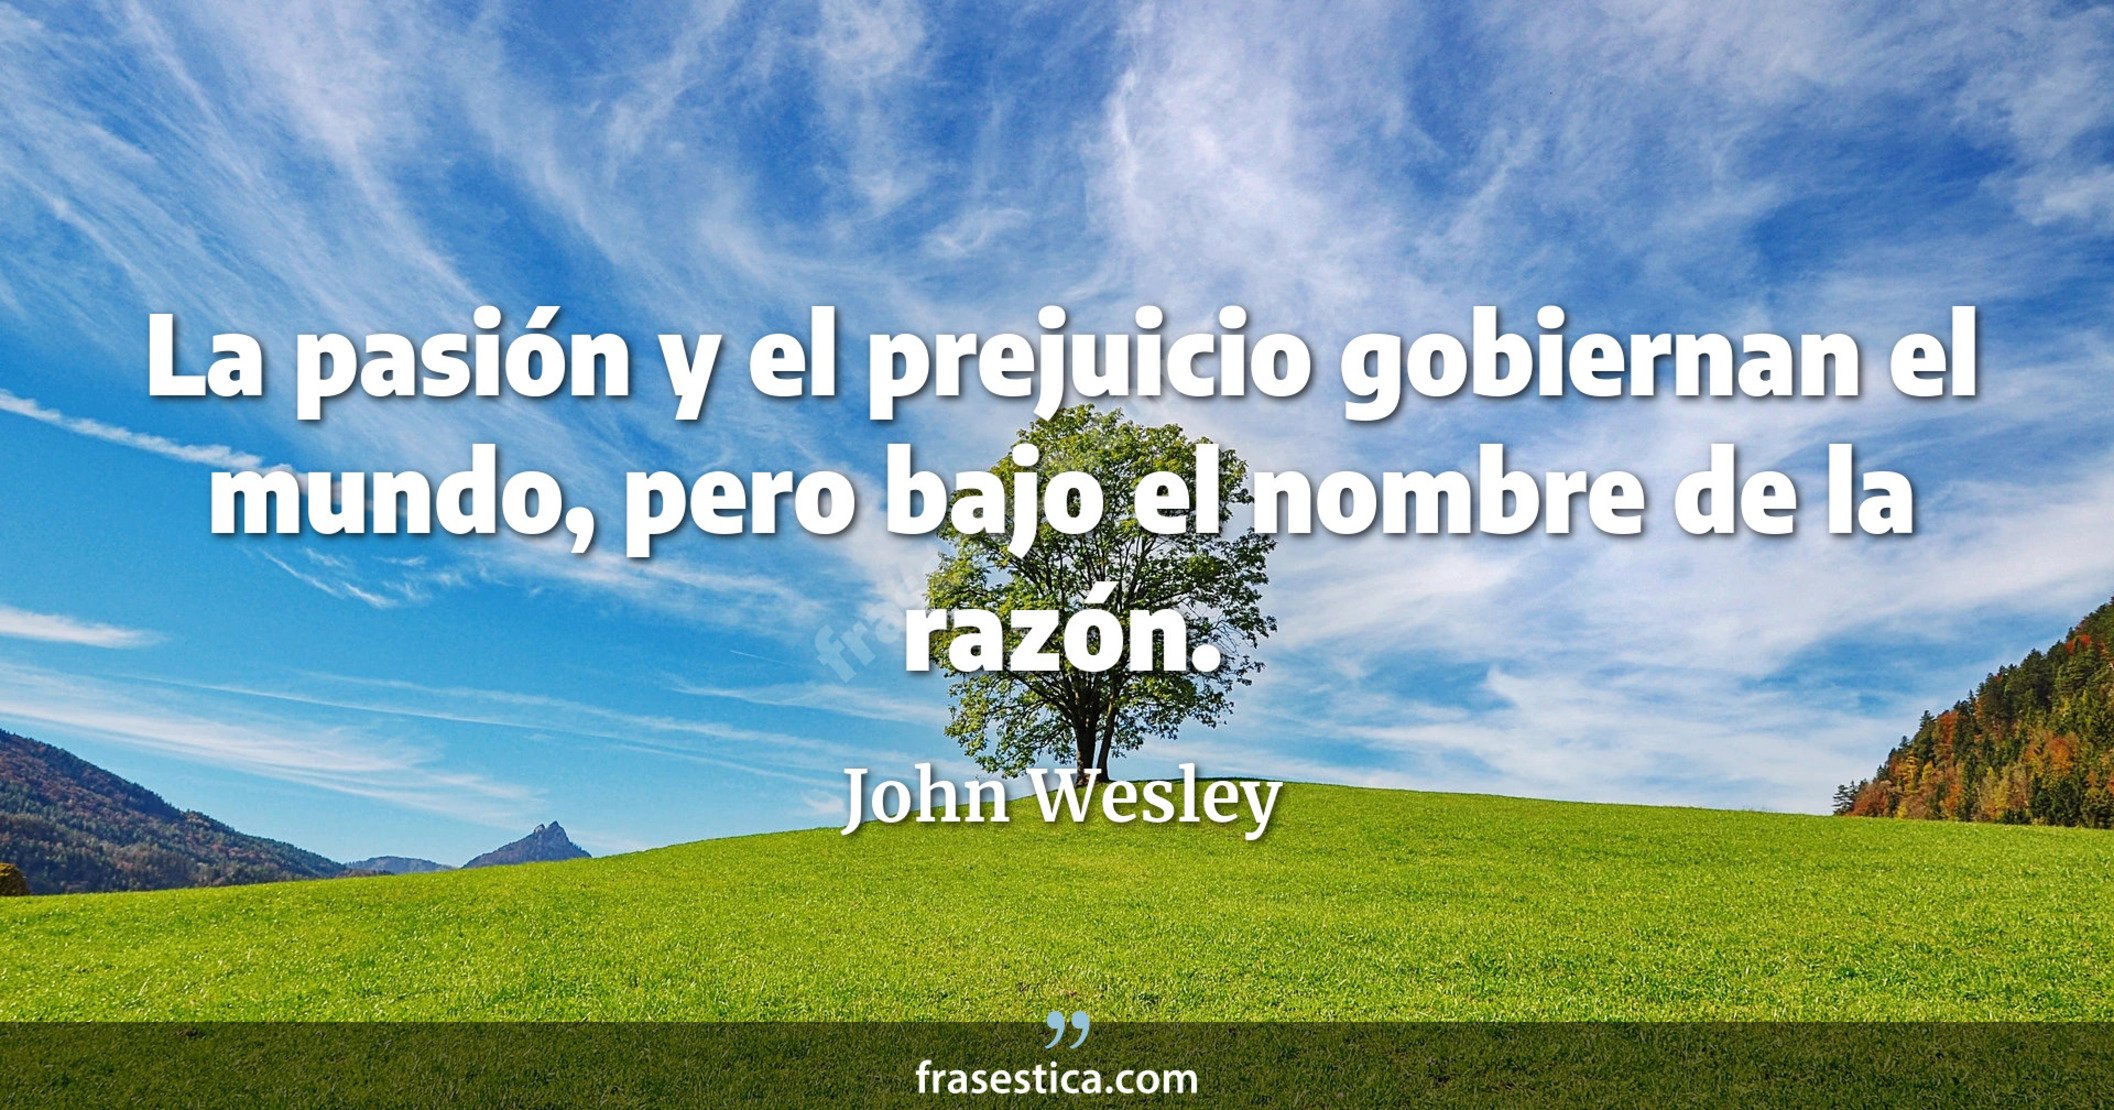 La pasión y el prejuicio gobiernan el mundo, pero bajo el nombre de la razón. - John Wesley